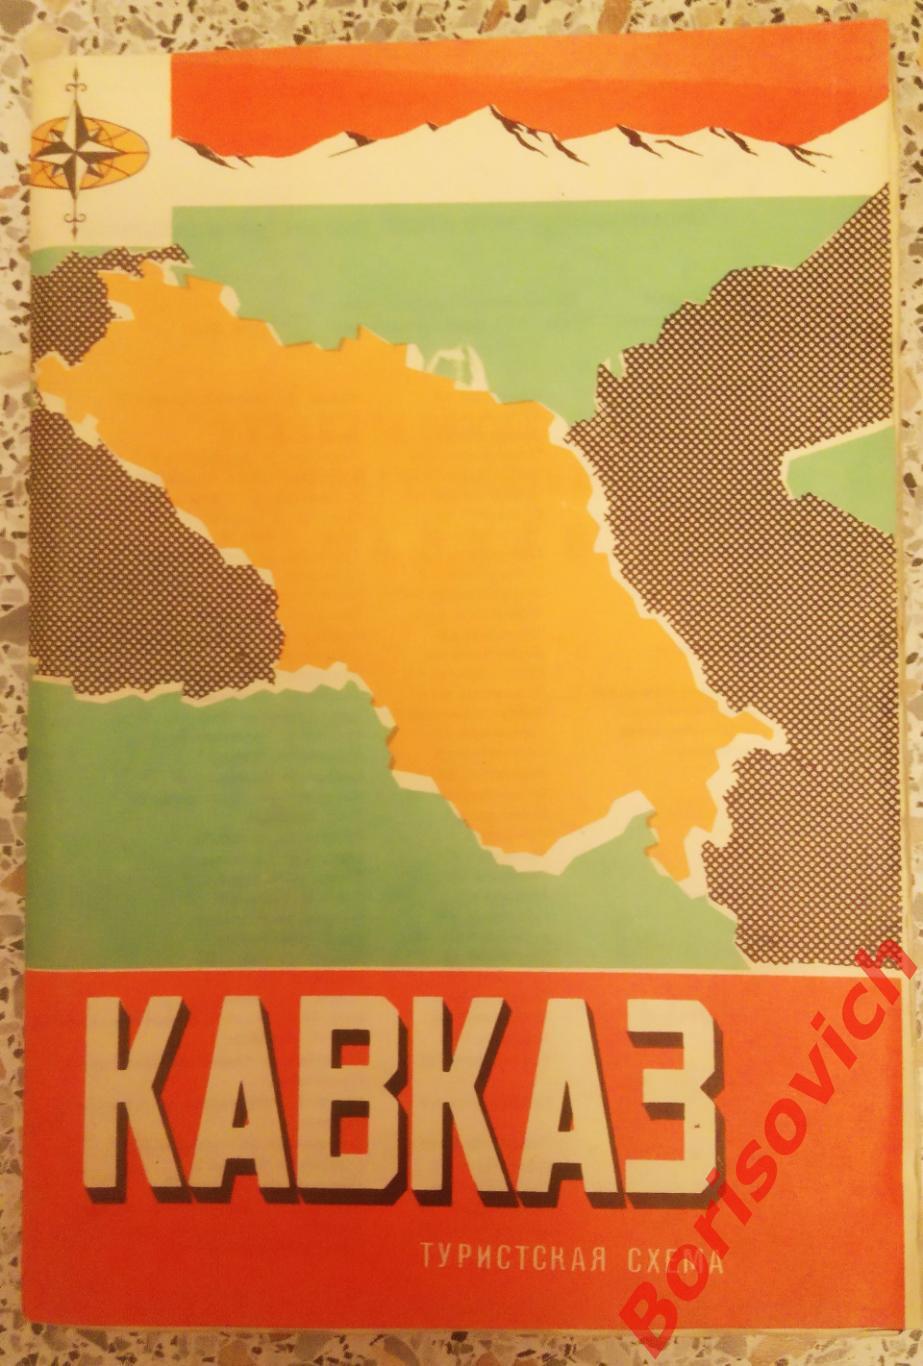 КАВКАЗ Туристская схема 1972 г